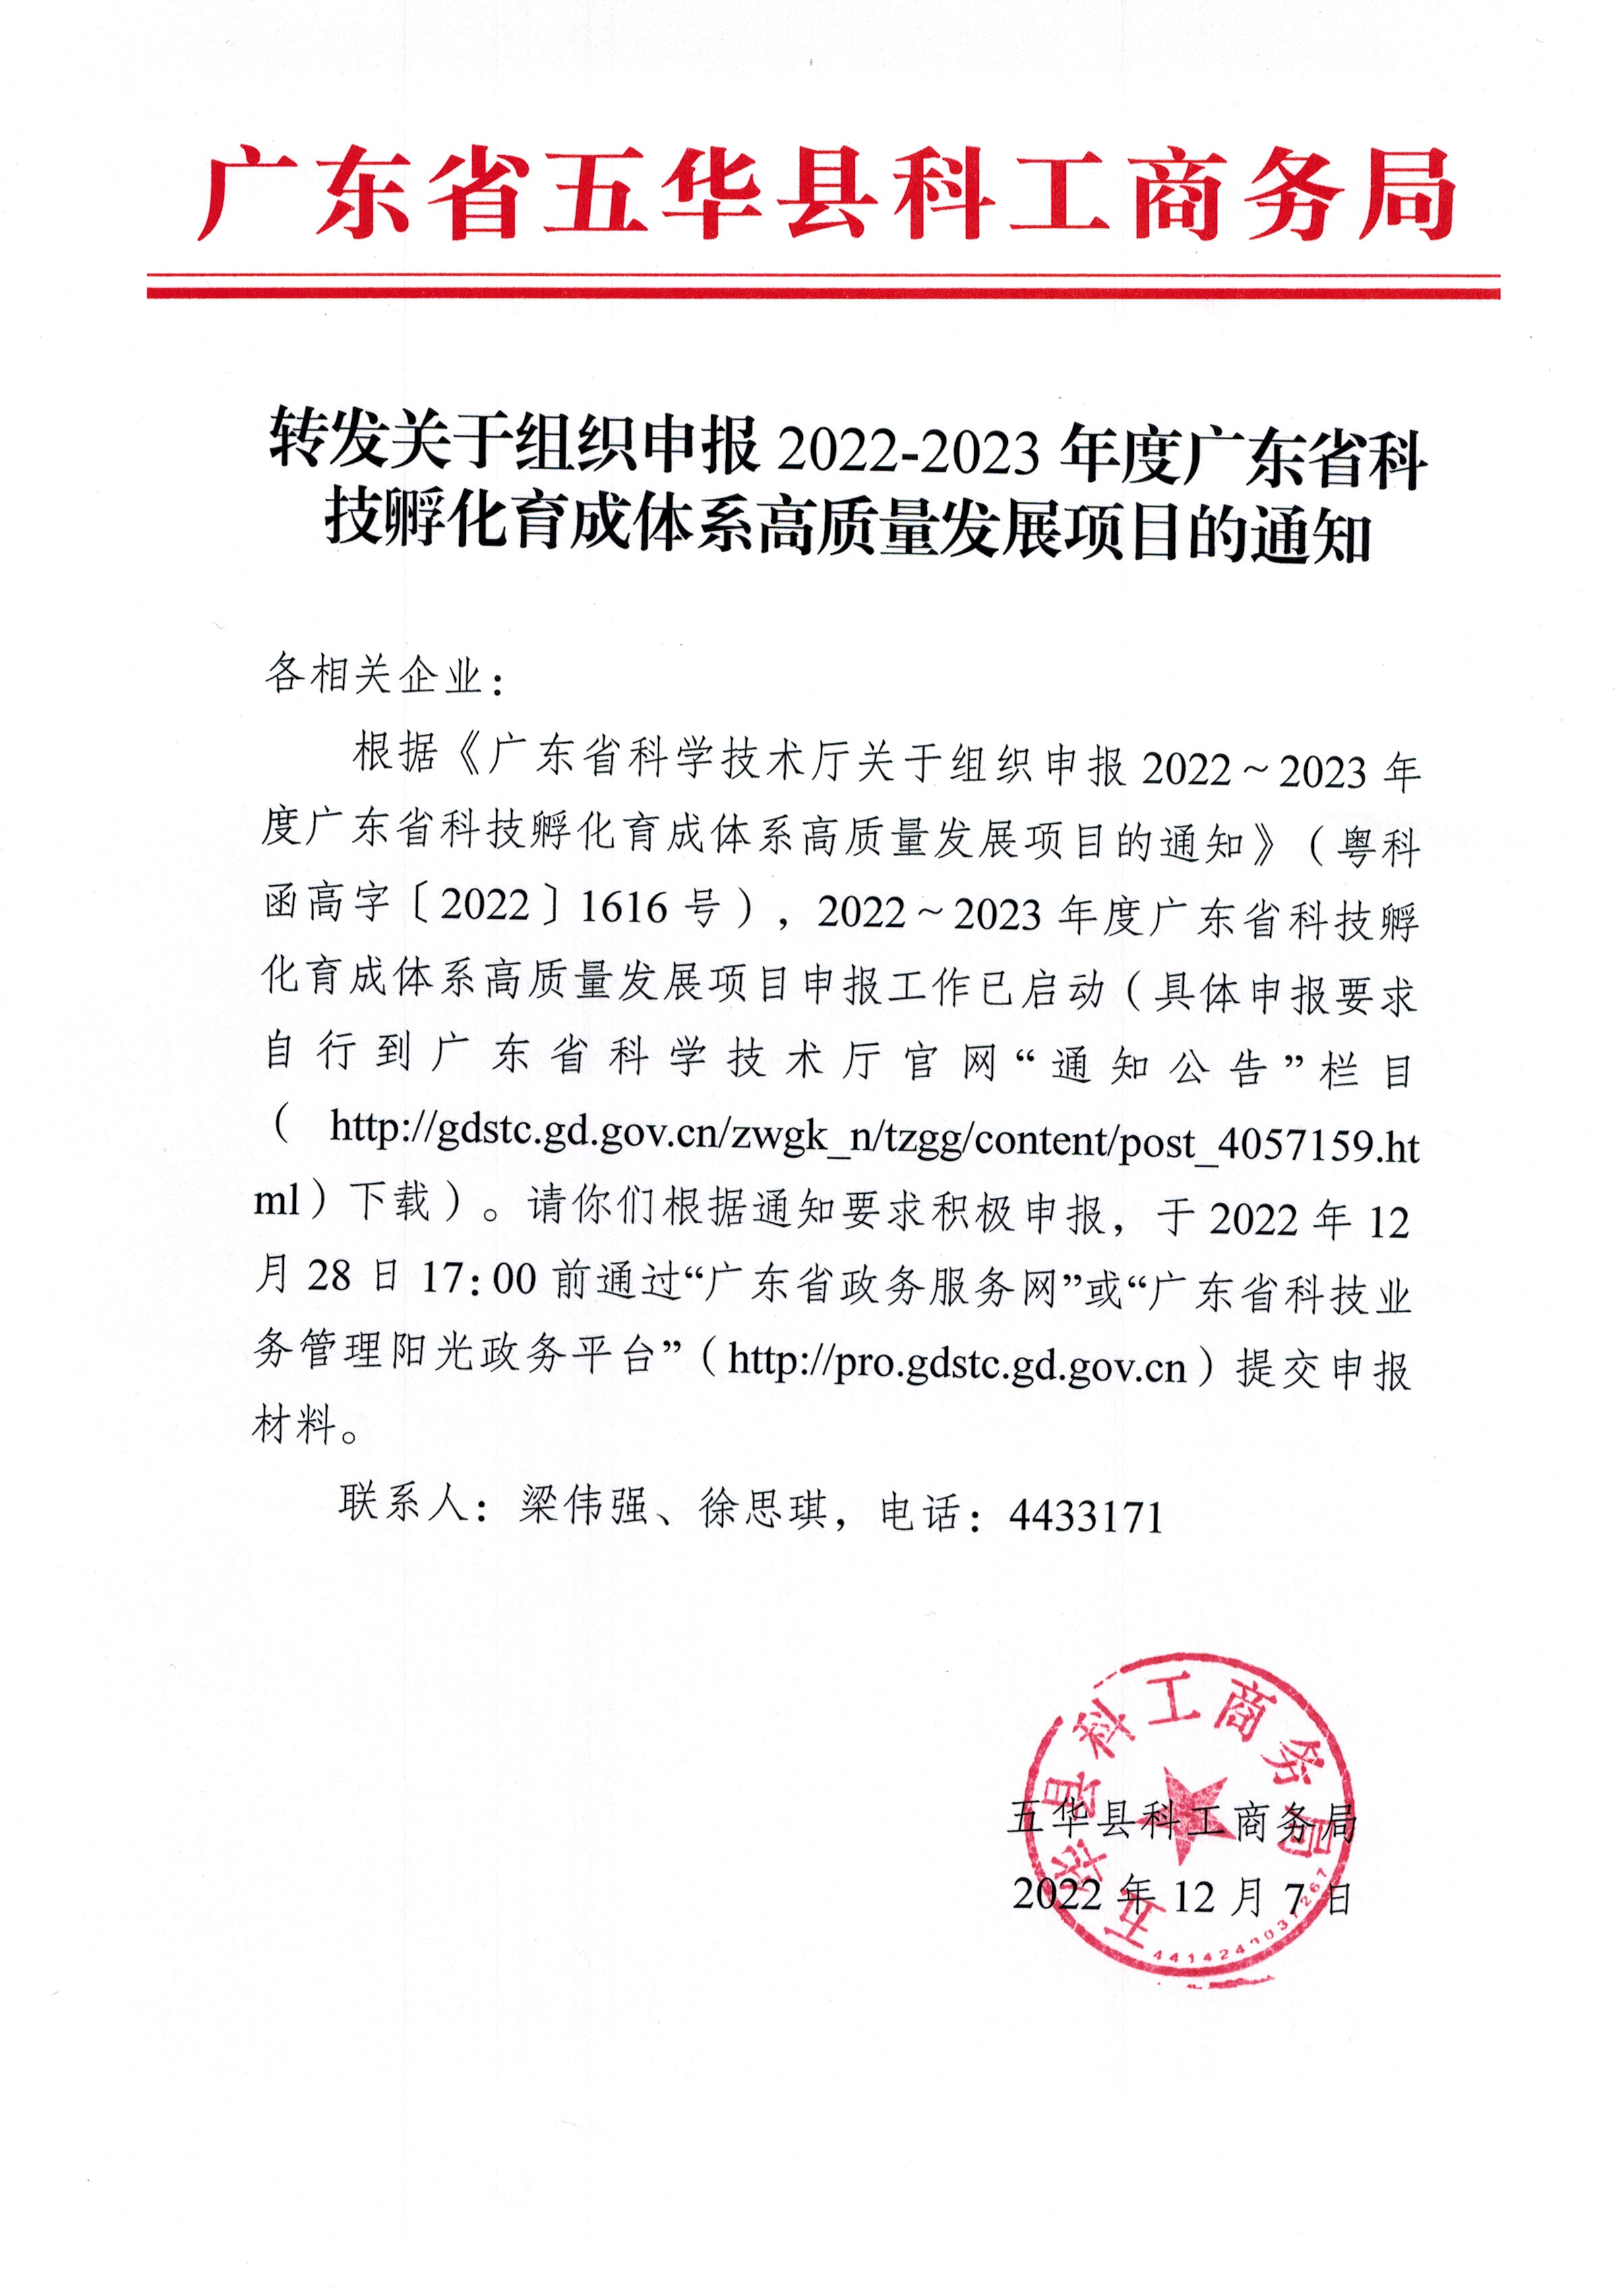 1207转发关于组织申报2022-2023年度广东省科技孵化育成体系高质量发展项目的通知(1).jpg